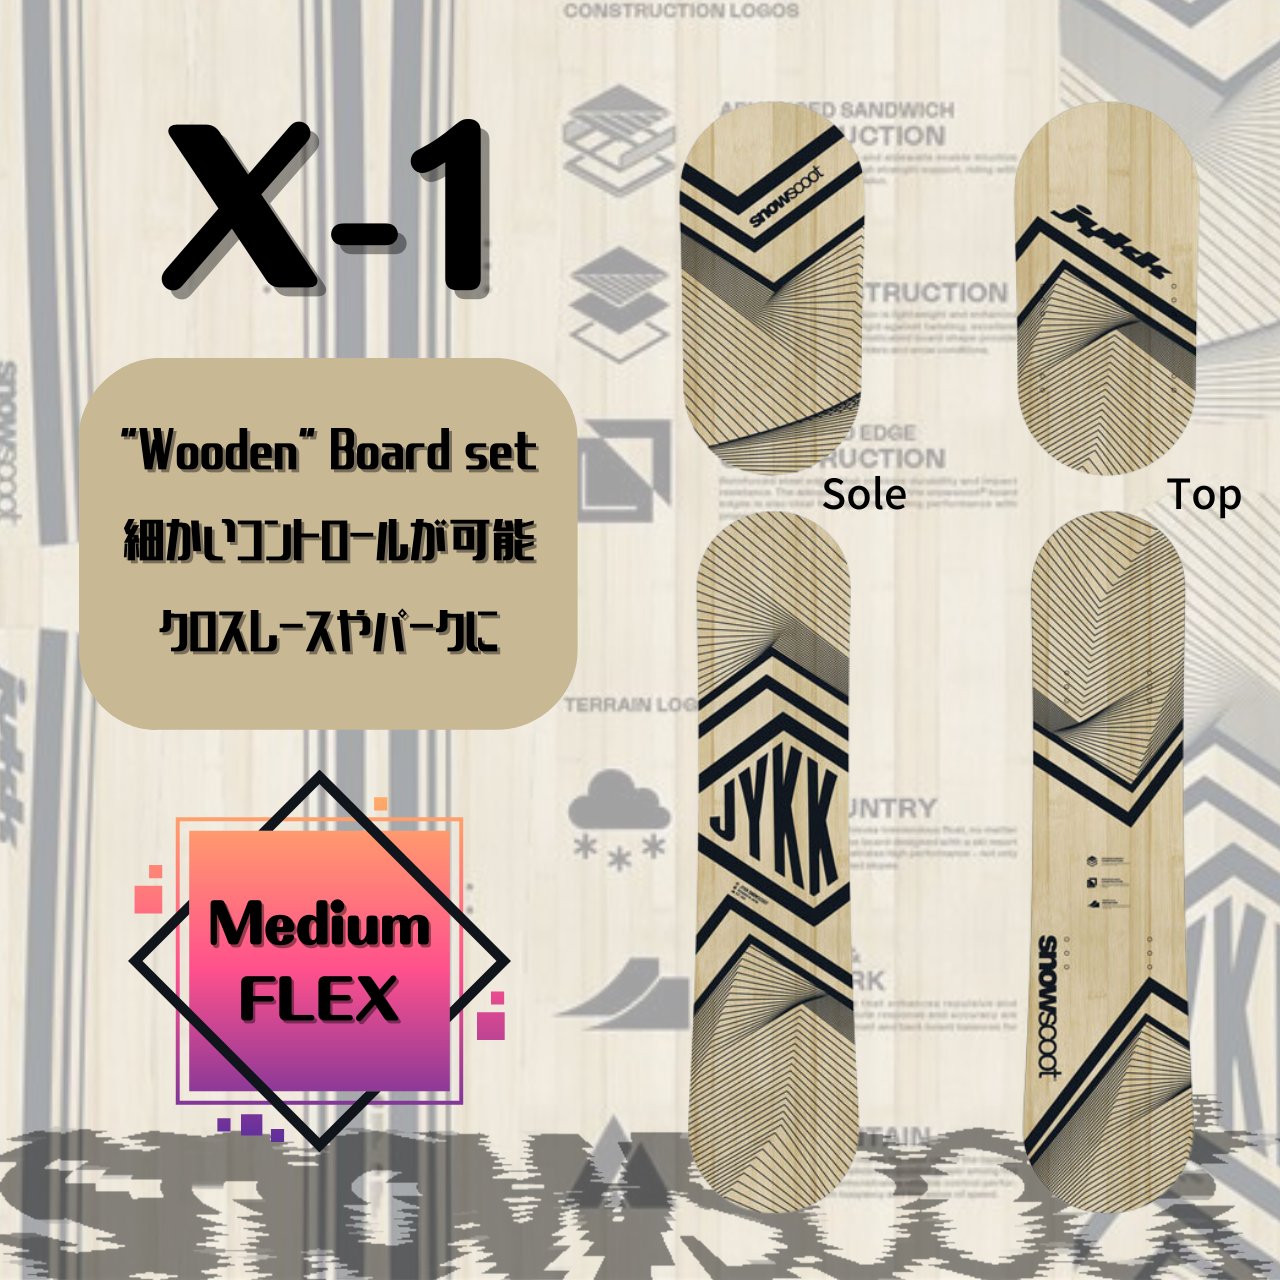 【新入荷】 jykk X-1 ボード Board Set ”WOODEN” EDITION 画像